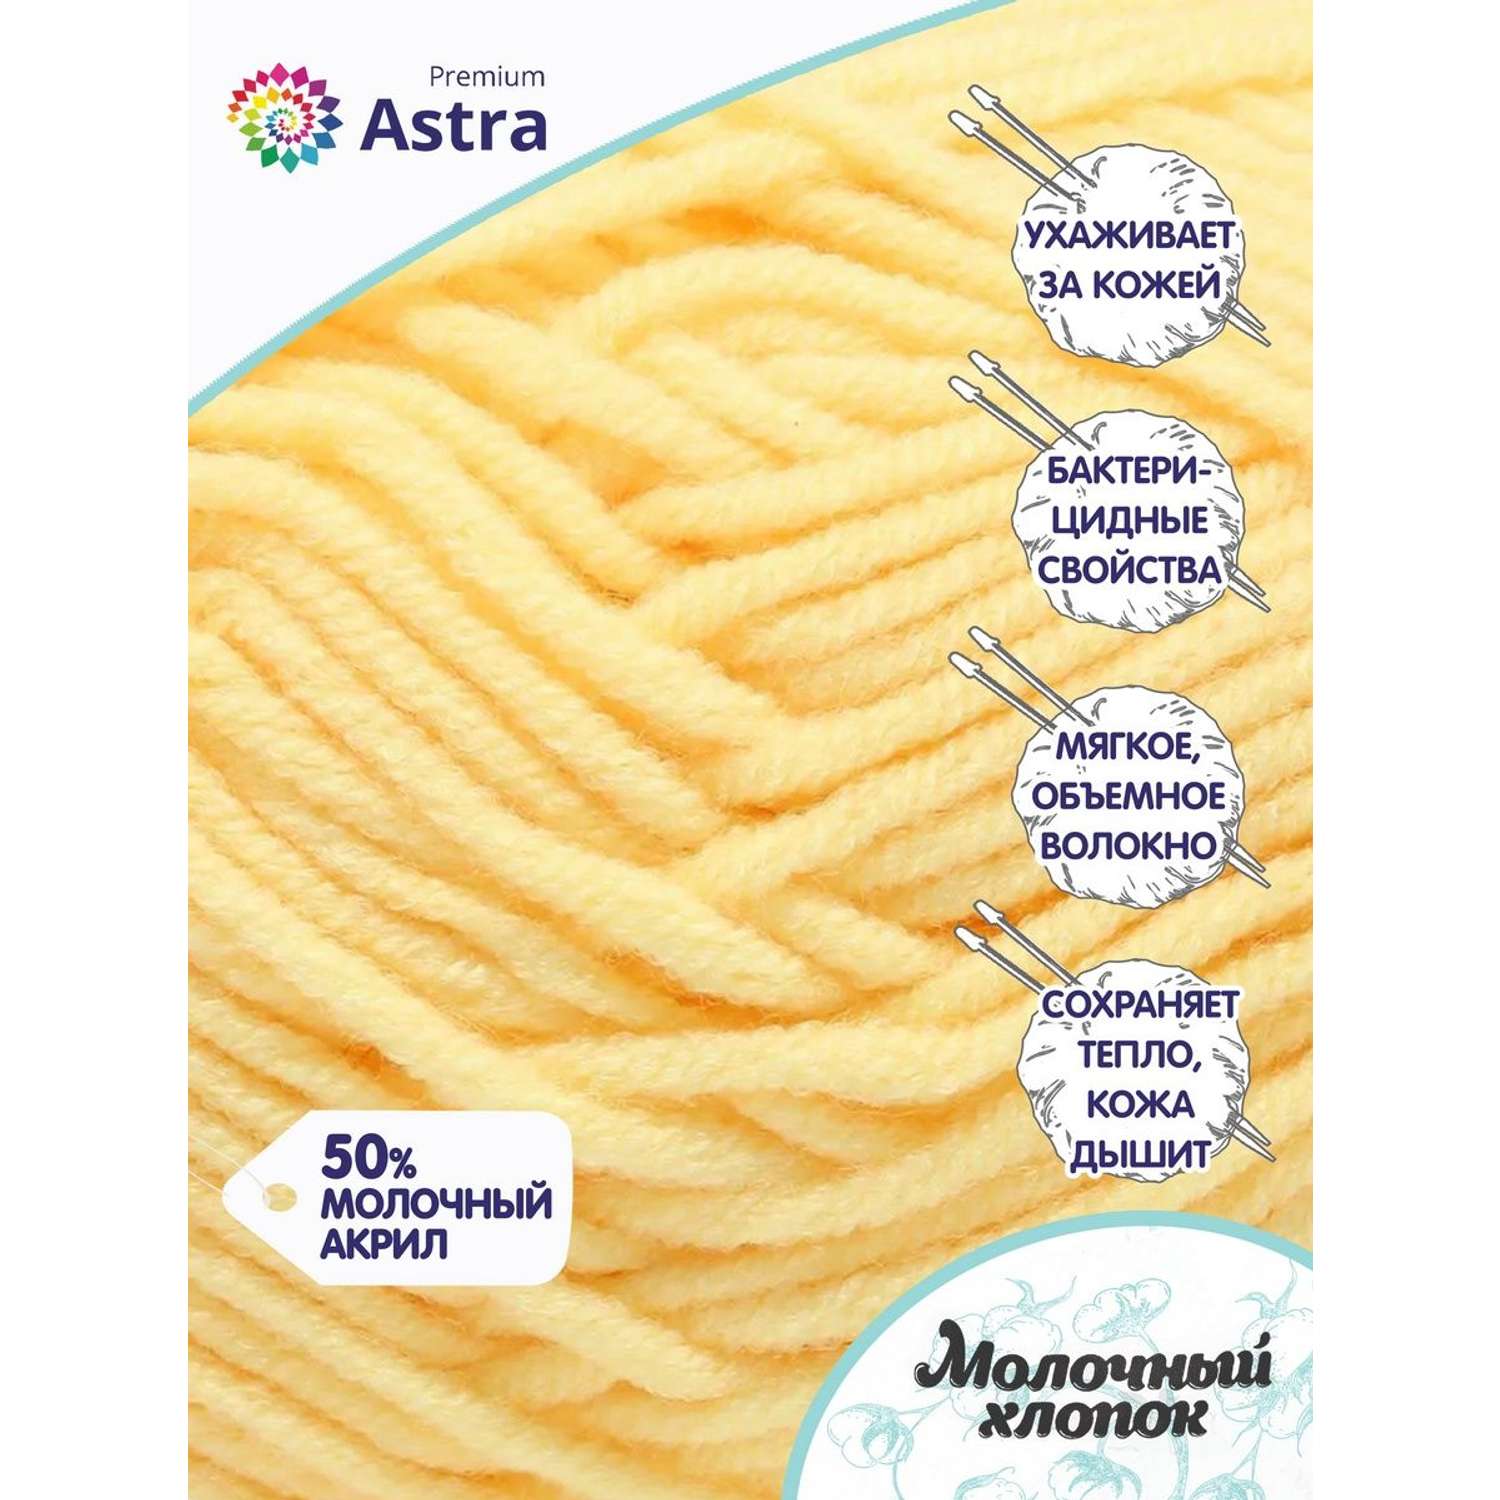 Пряжа для вязания Astra Premium milk cotton хлопок акрил 50 гр 100 м 23 ванильный крем 3 мотка - фото 2